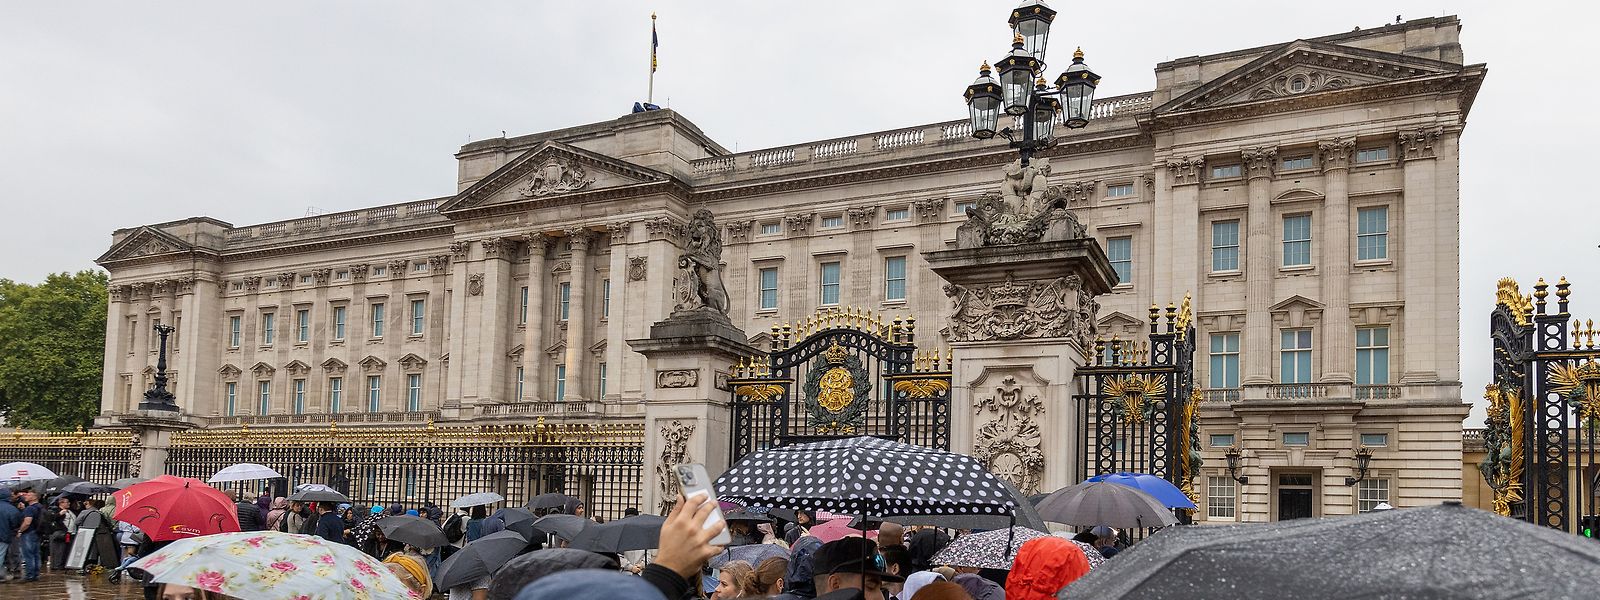 König Charles III. will den Buckingham-Palast und andere royale Residenzen zugänglicher für die Öffentlichkeit machen.